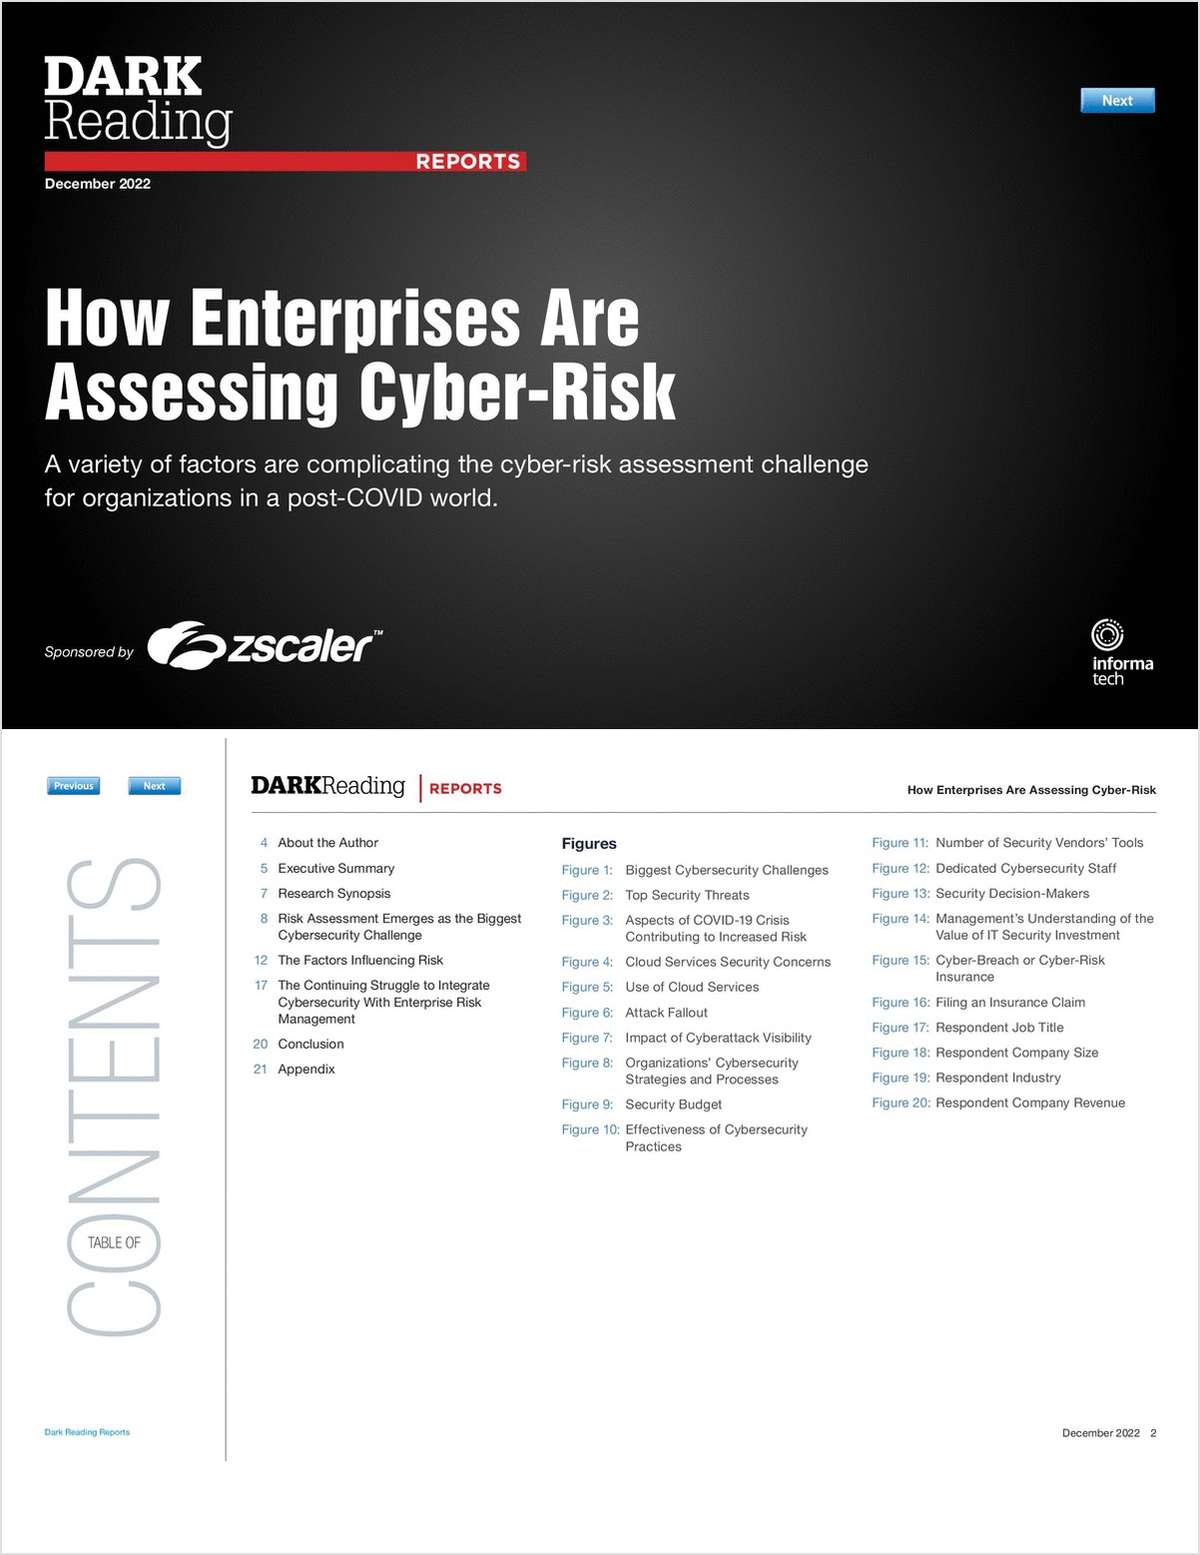 How Enterprises Are Assessing Cyber-Risk